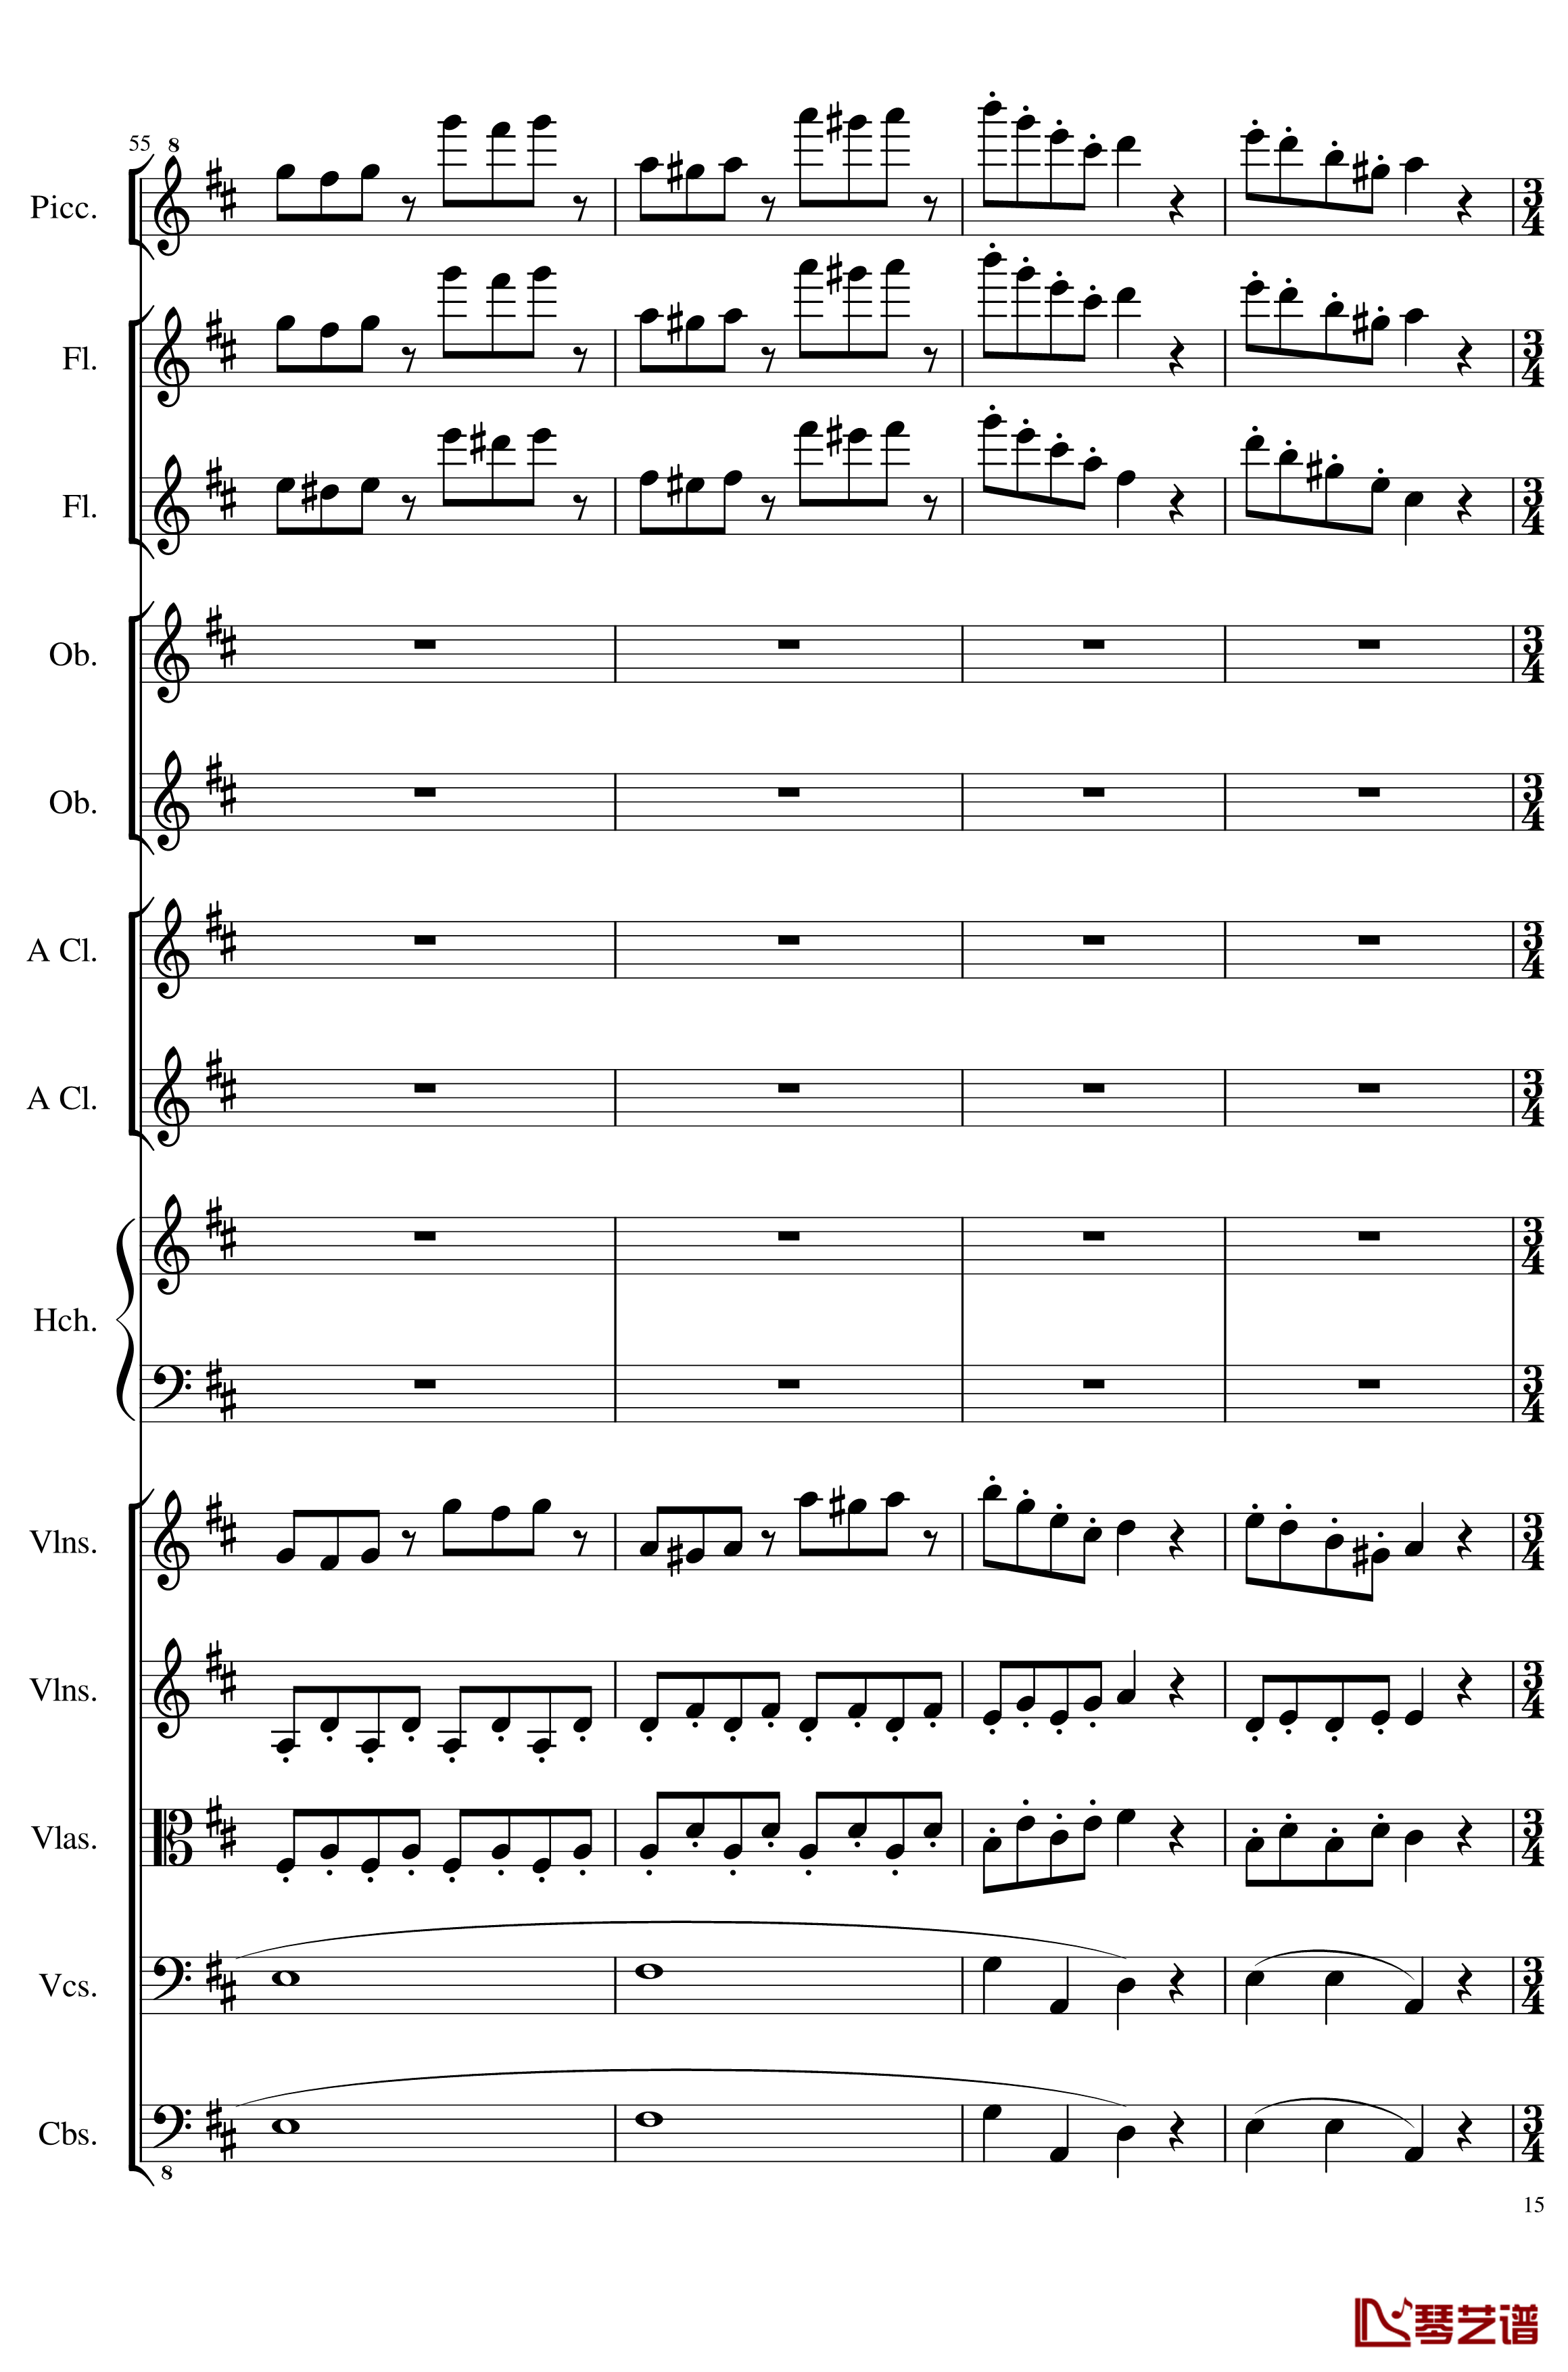 7 Contredanses No.1-7, Op.124钢琴谱-7首乡村舞曲，第一至第七，作品124-一个球15